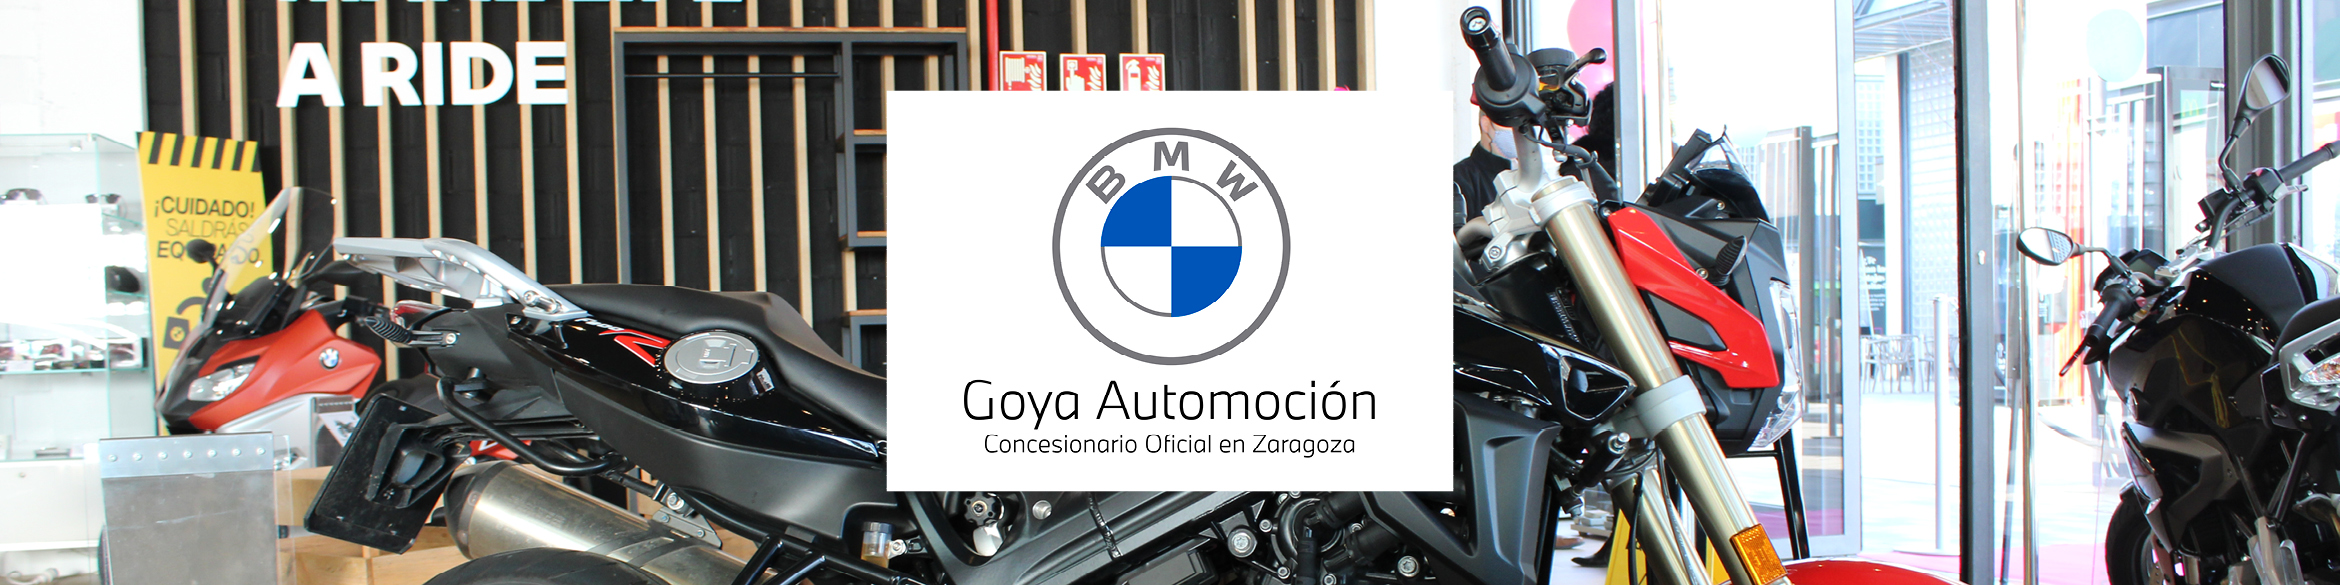 BMW GOYA AUTOMOCIÓN OPENS ITS STORE IN LA TORRE OUTLET ZARAGOZA